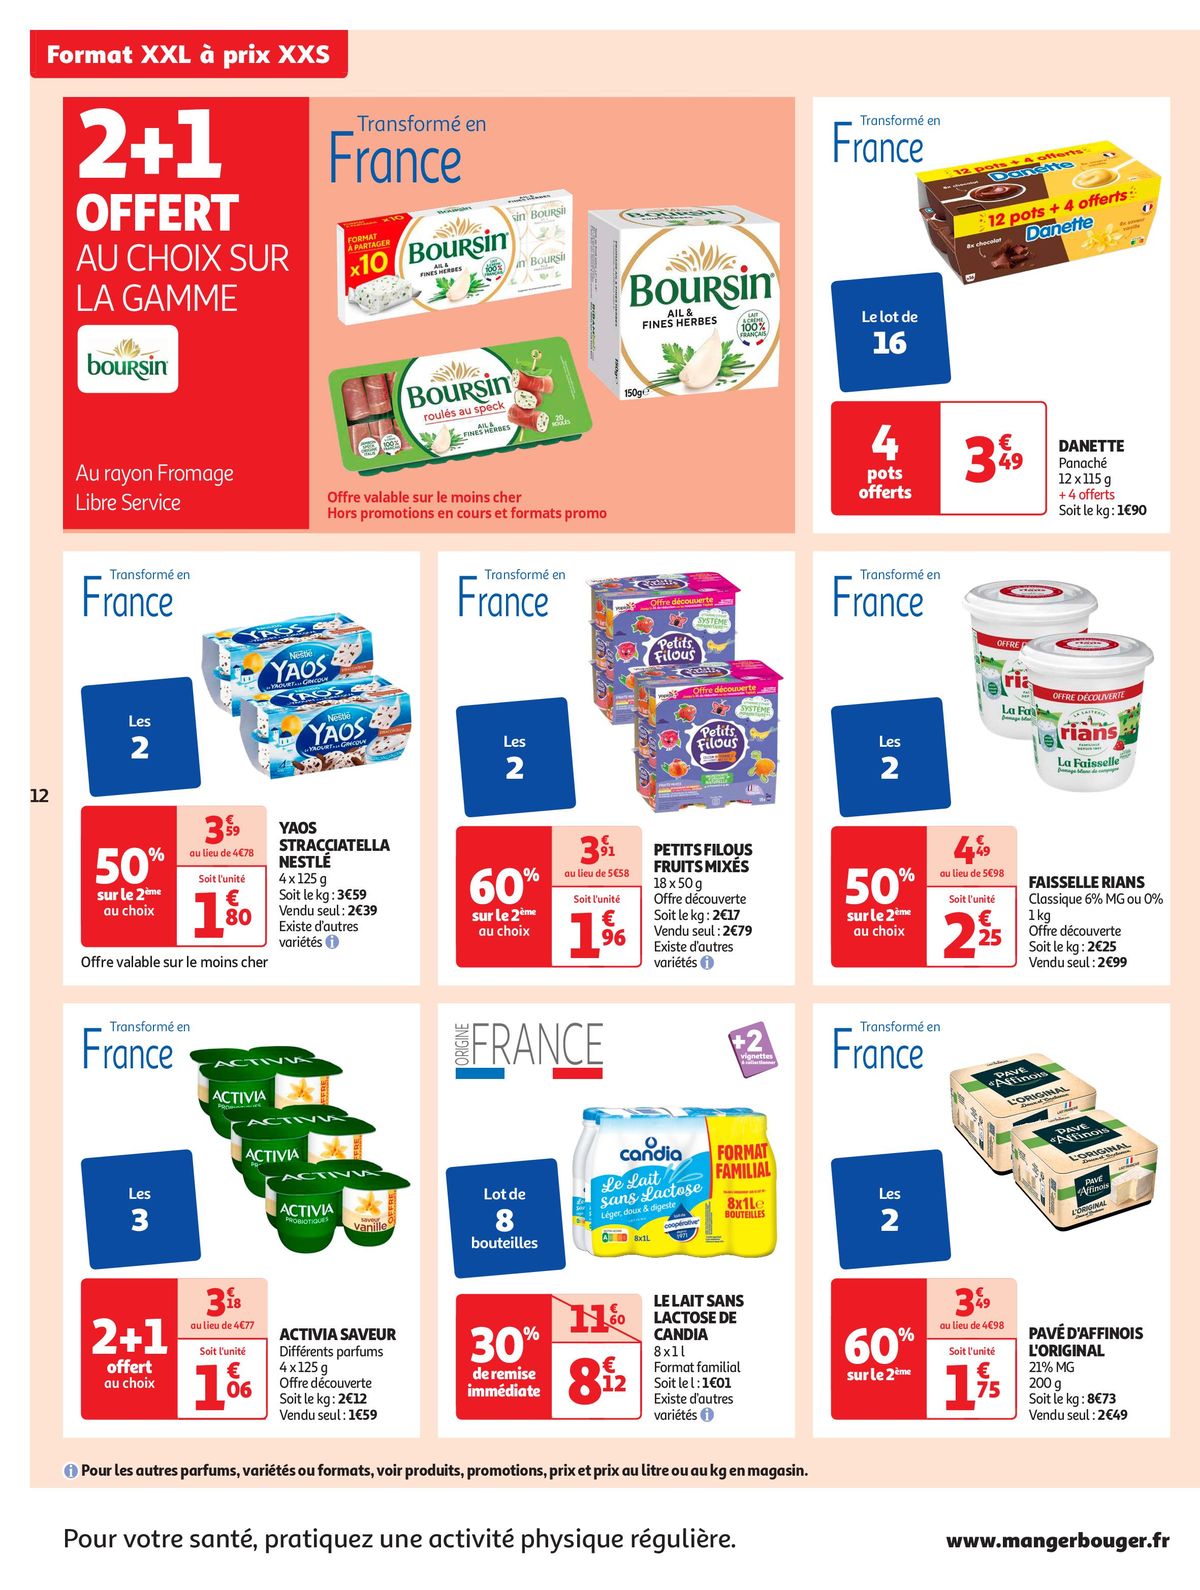 Catalogue Format XXL à prix XXS dans votre supermarché, page 00012